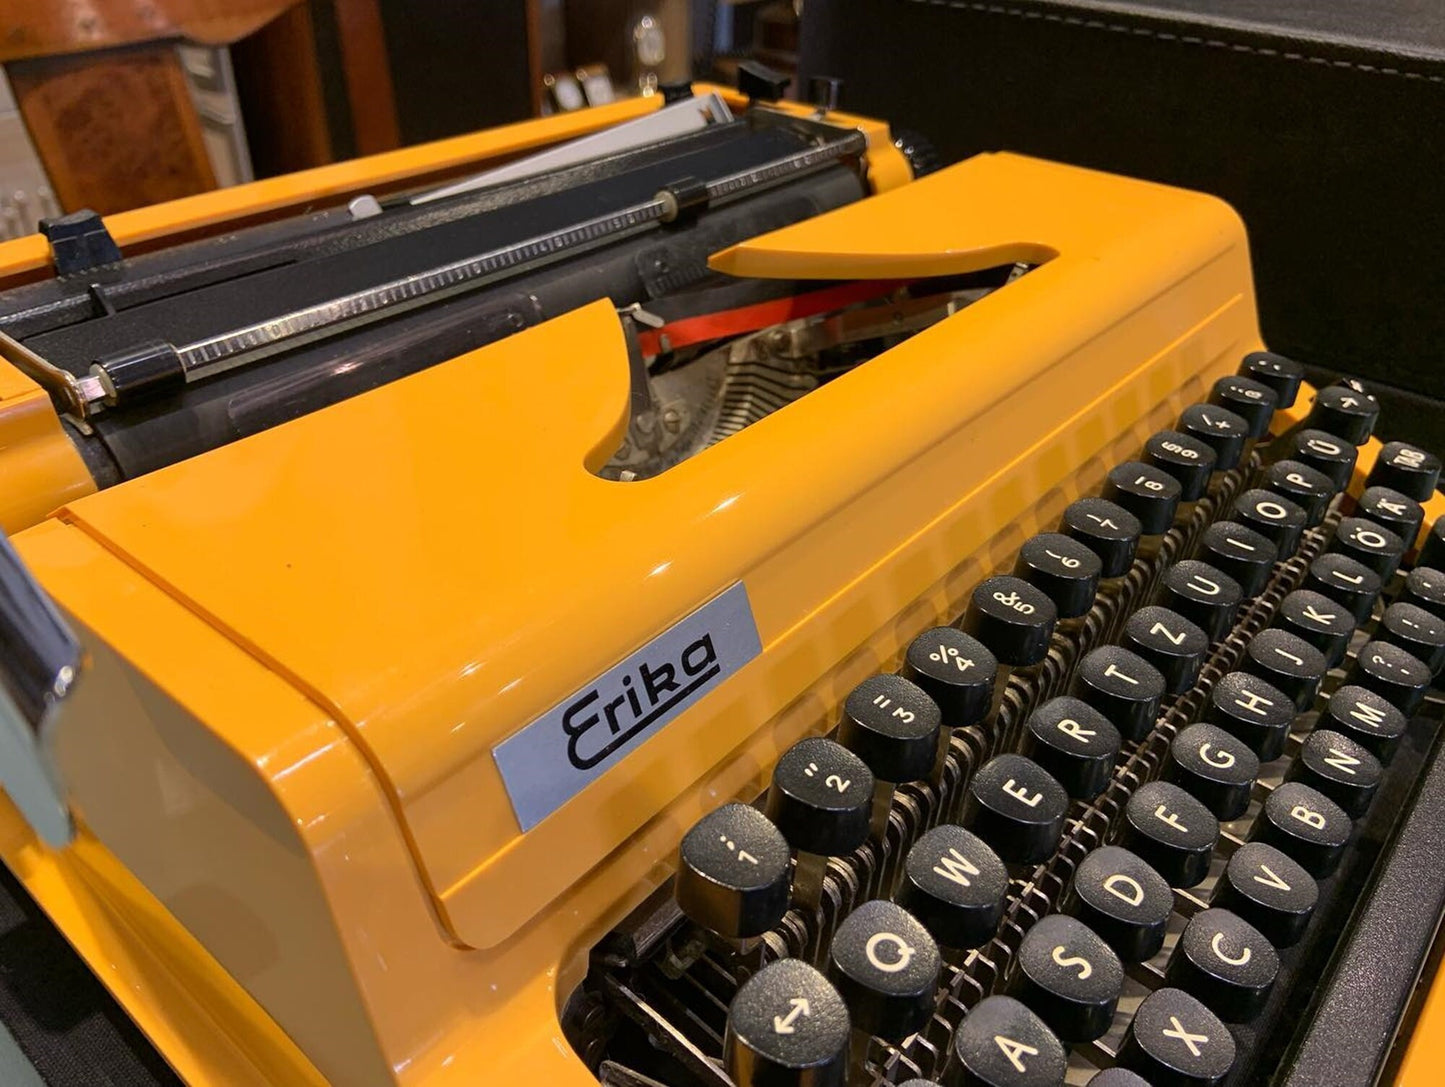 Erika Typewriter | Typewriter like new,typewriter working